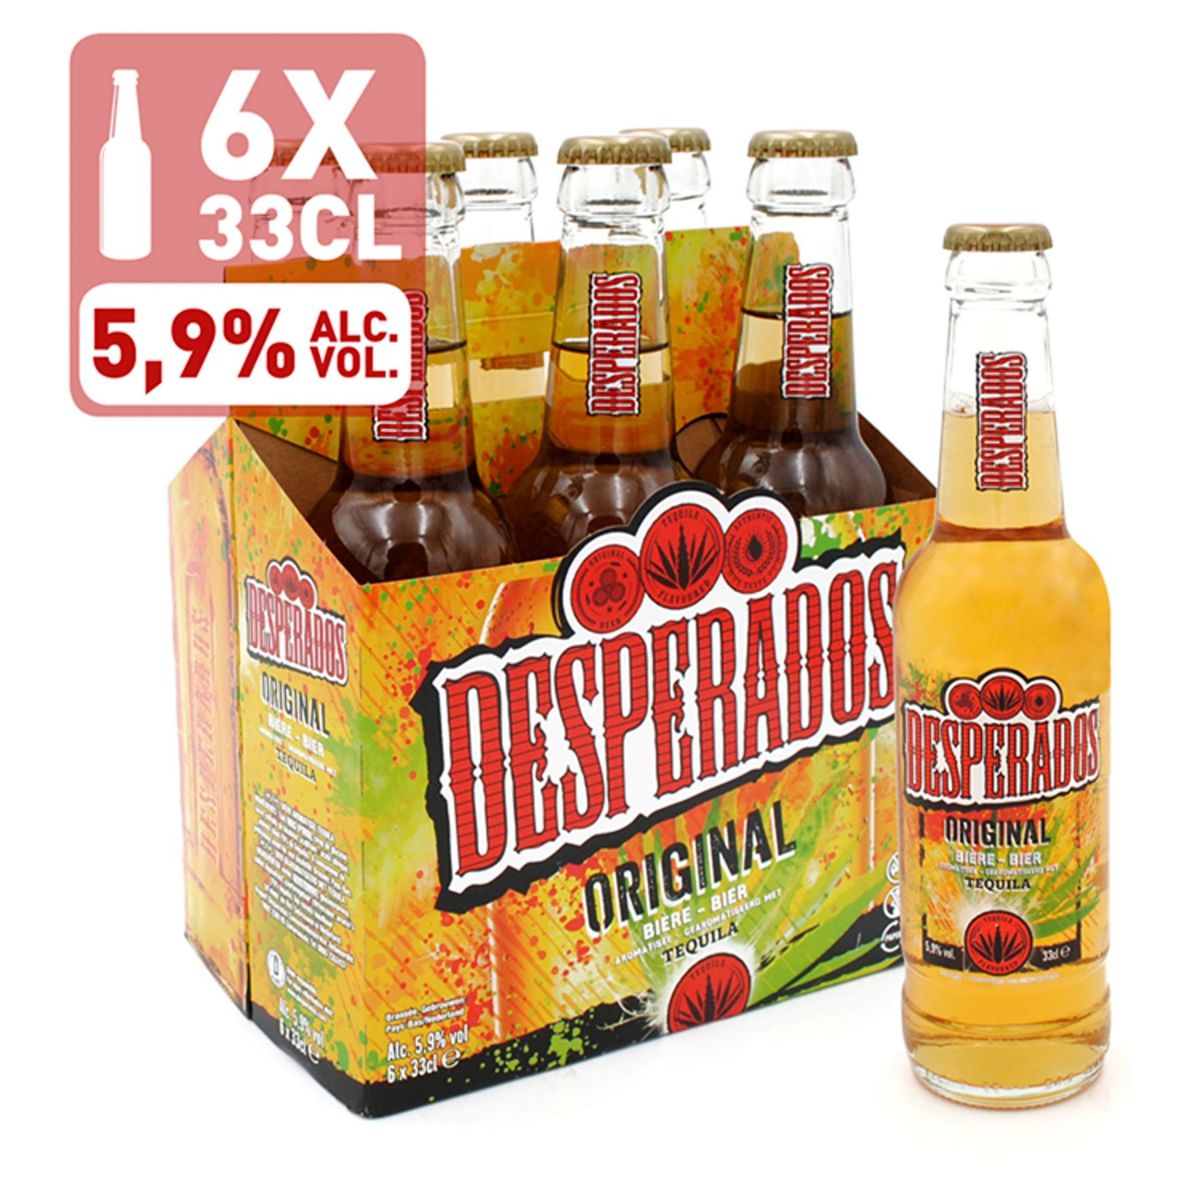 Desperados Bier Tequila 5.9% ALC 6 x 33 cl Fles